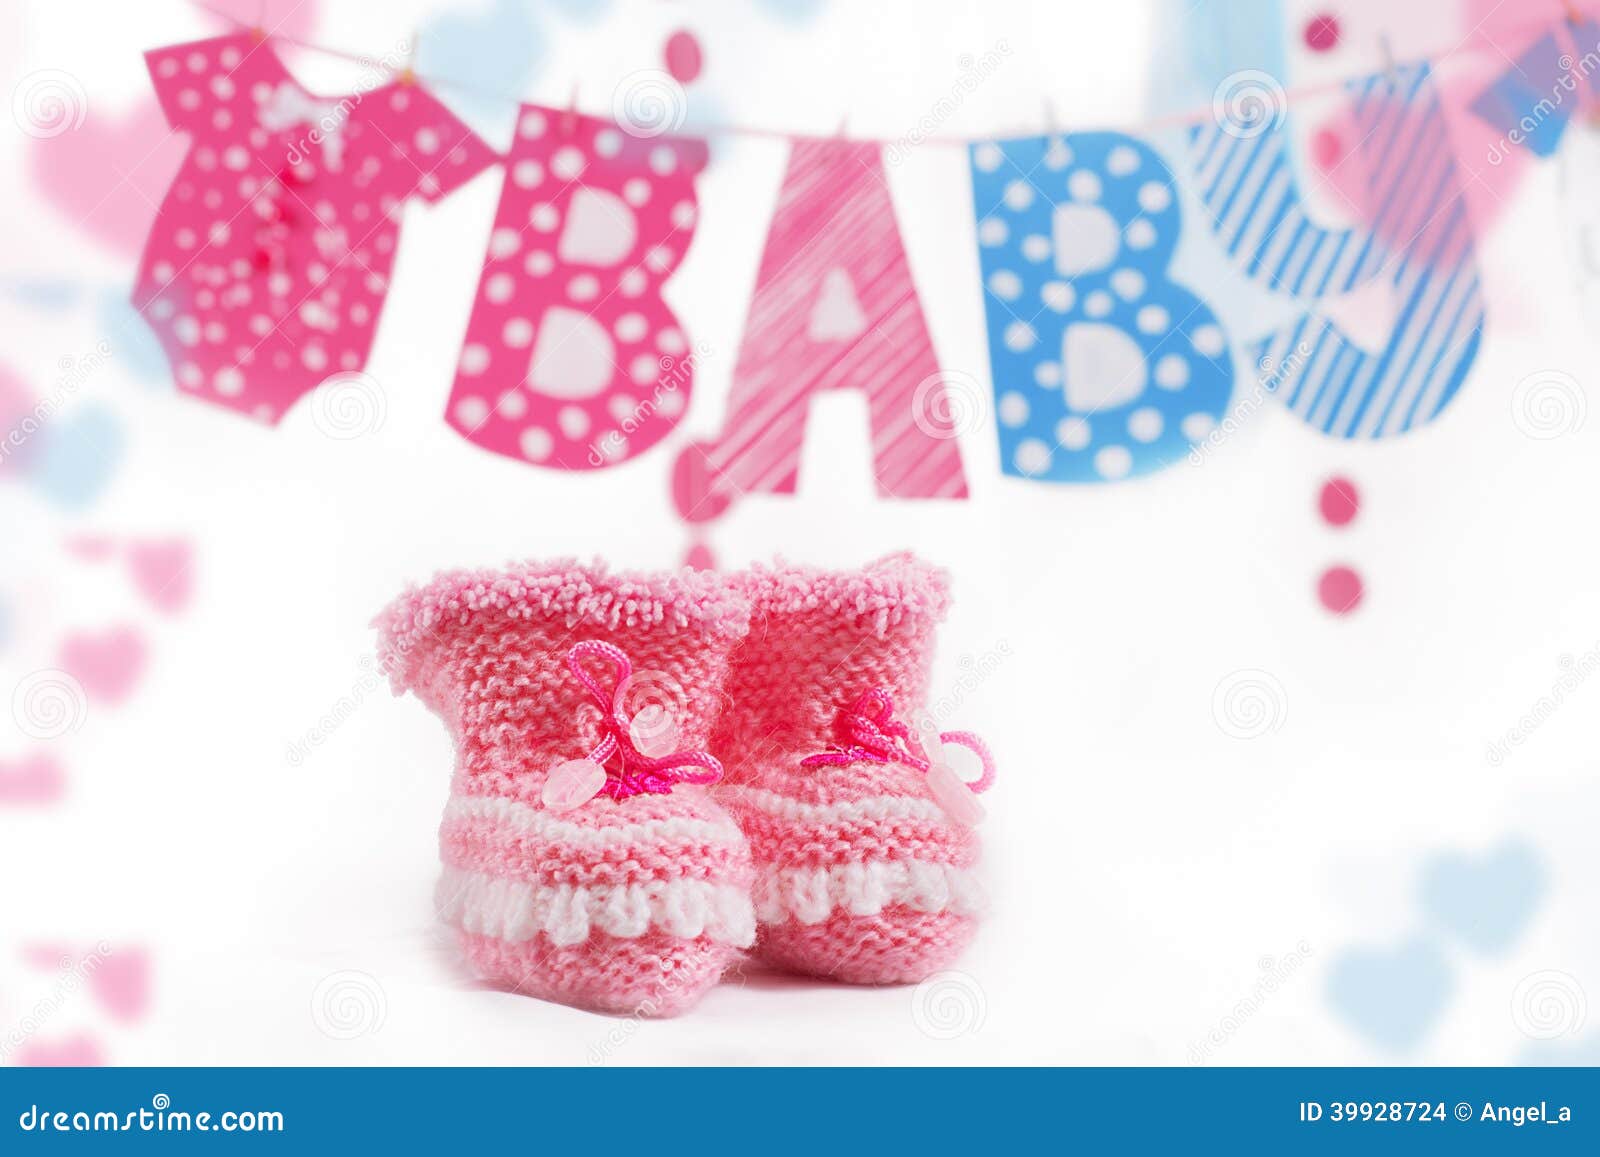 imagem de sapatinho de bebe azul e rosa